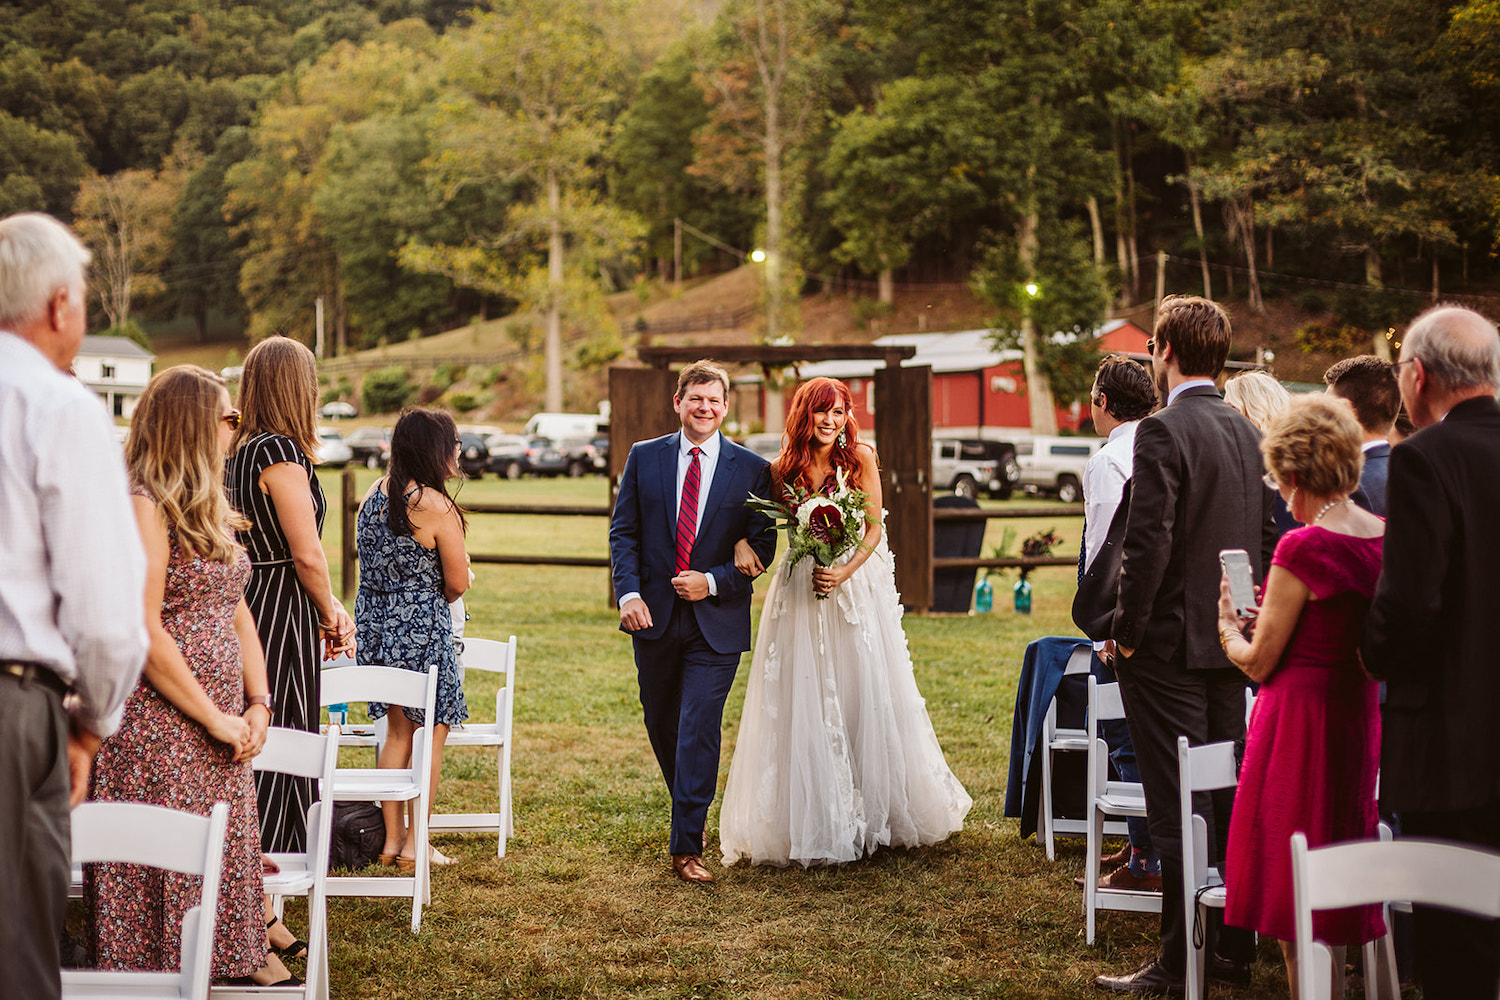 bride walks through wooden doorway in a field toward wedding guests